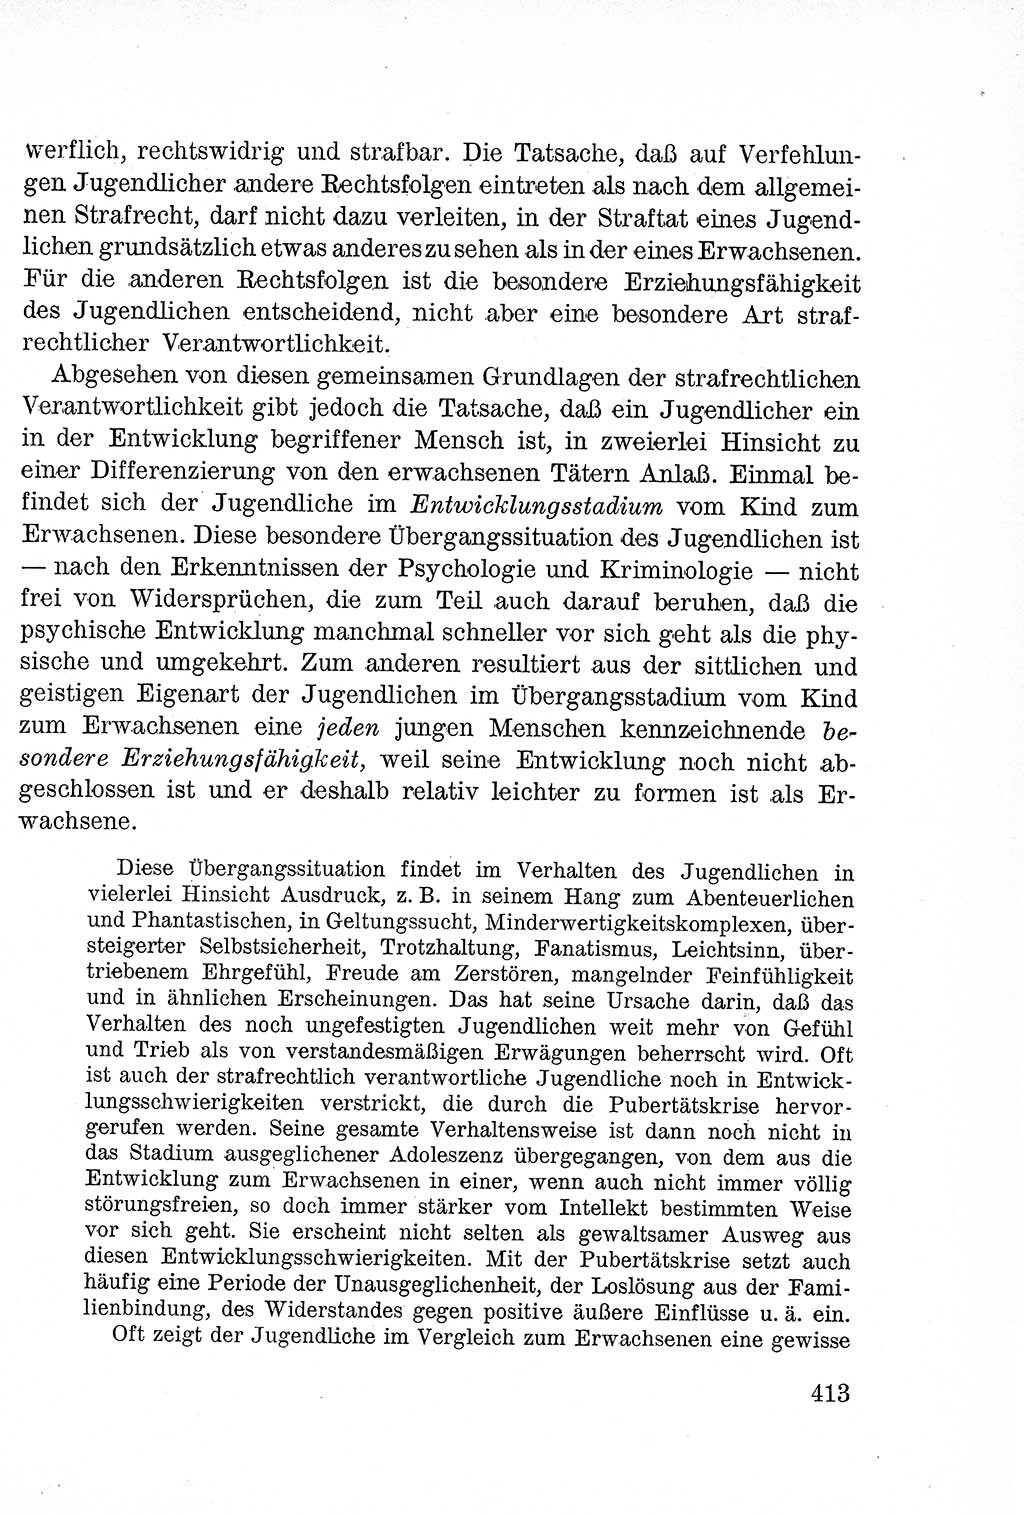 Lehrbuch des Strafrechts der Deutschen Demokratischen Republik (DDR), Allgemeiner Teil 1957, Seite 413 (Lb. Strafr. DDR AT 1957, S. 413)